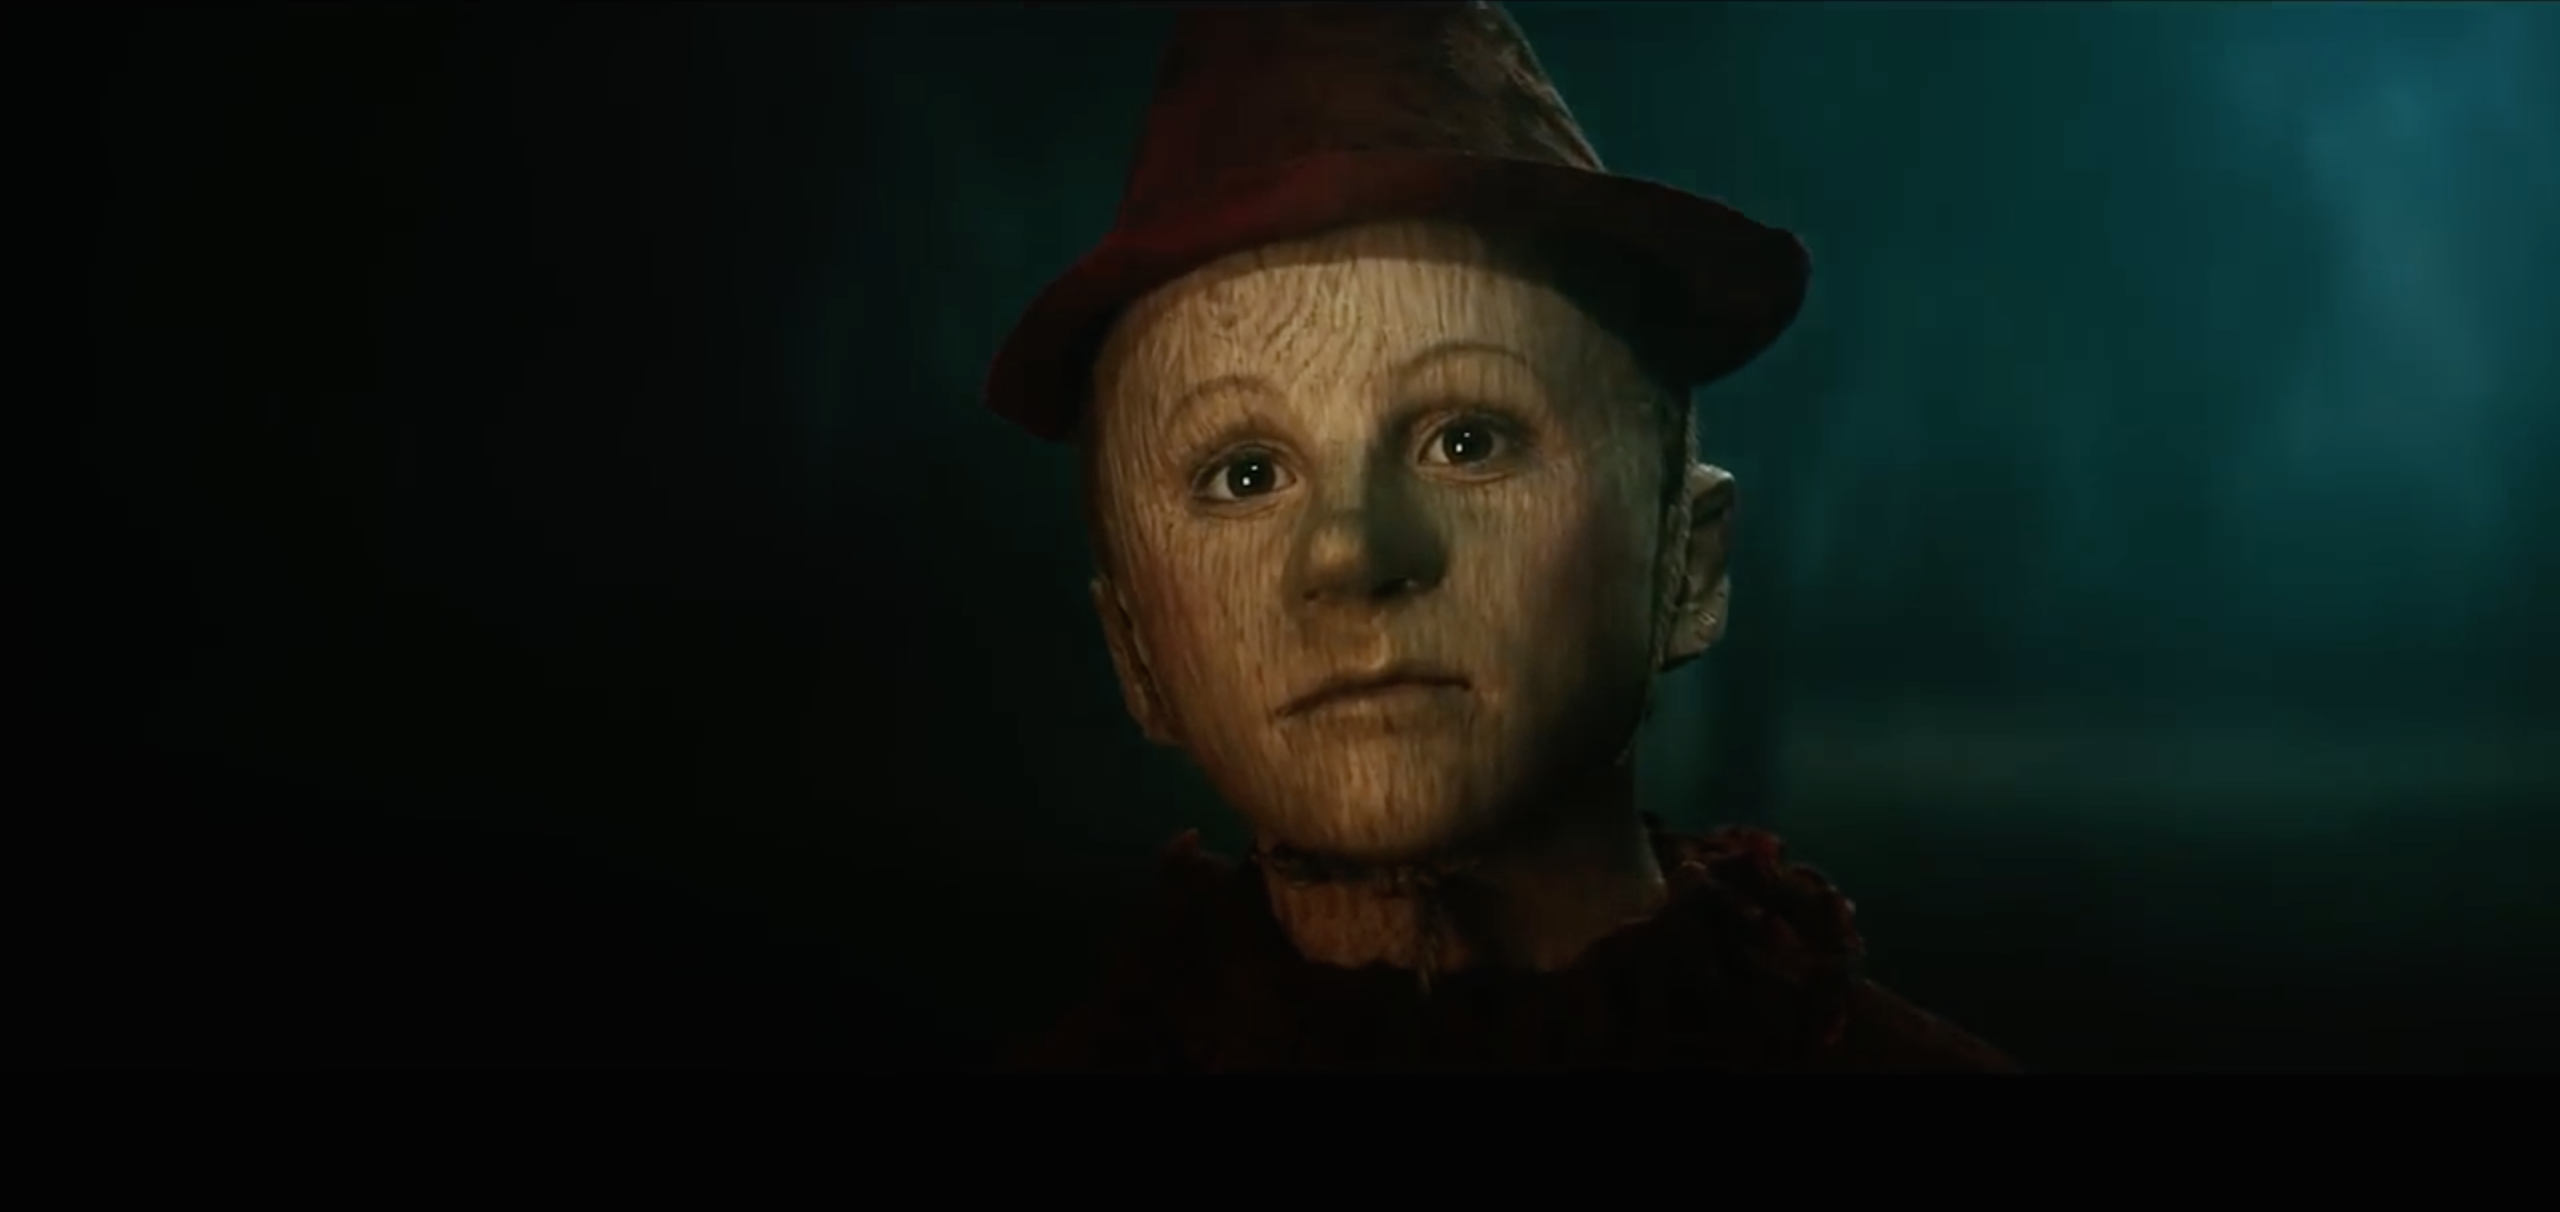 Pinocchio (2019 film) - Wikipedia